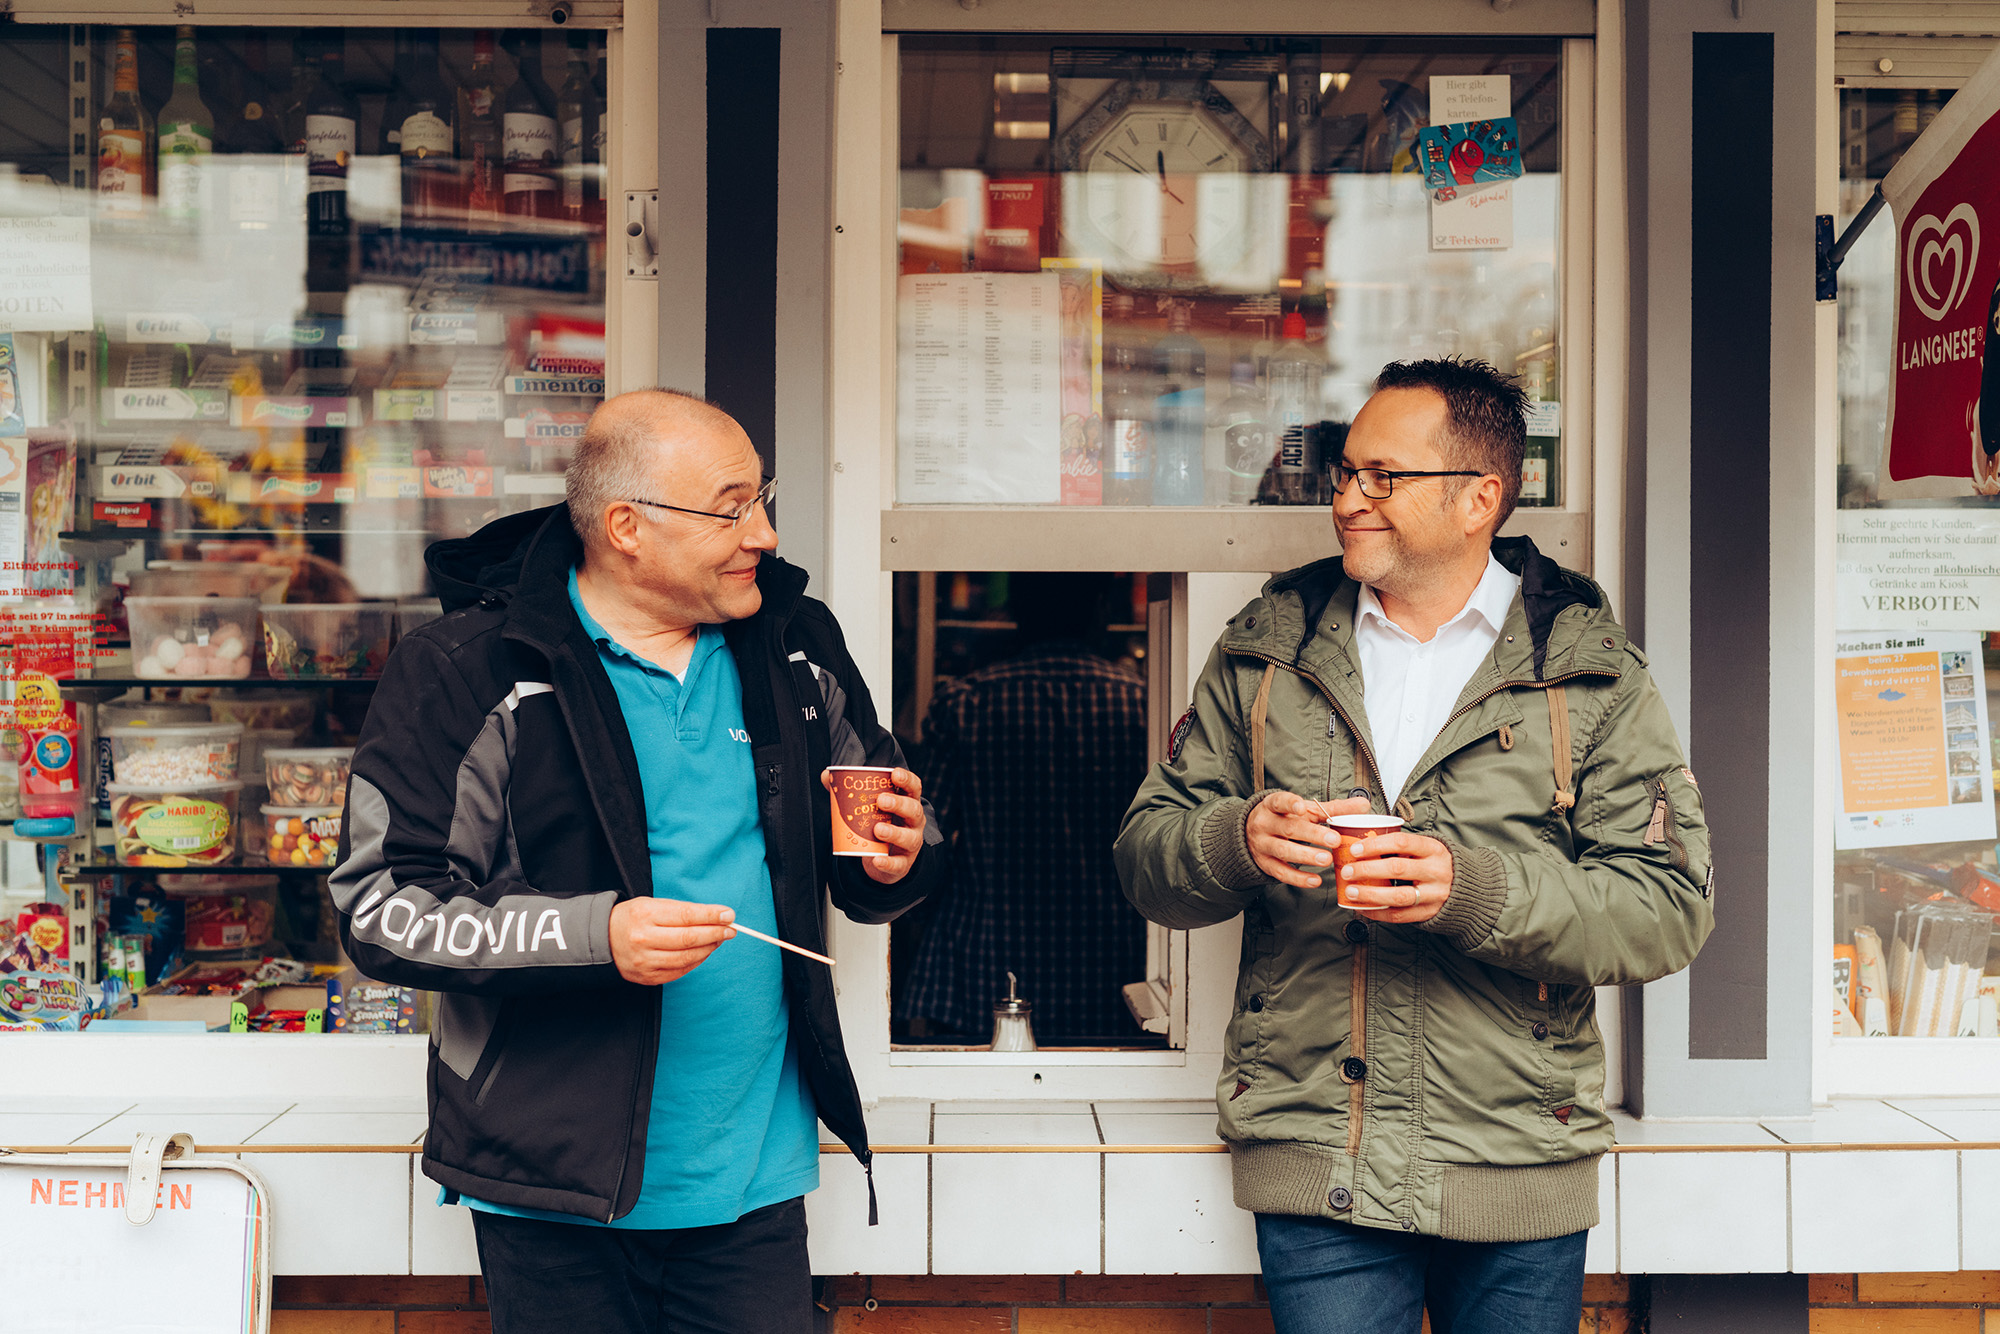 Vonovia Mitarbeiter und Mieter trinken einen Kaffee vor einem Kiosk.